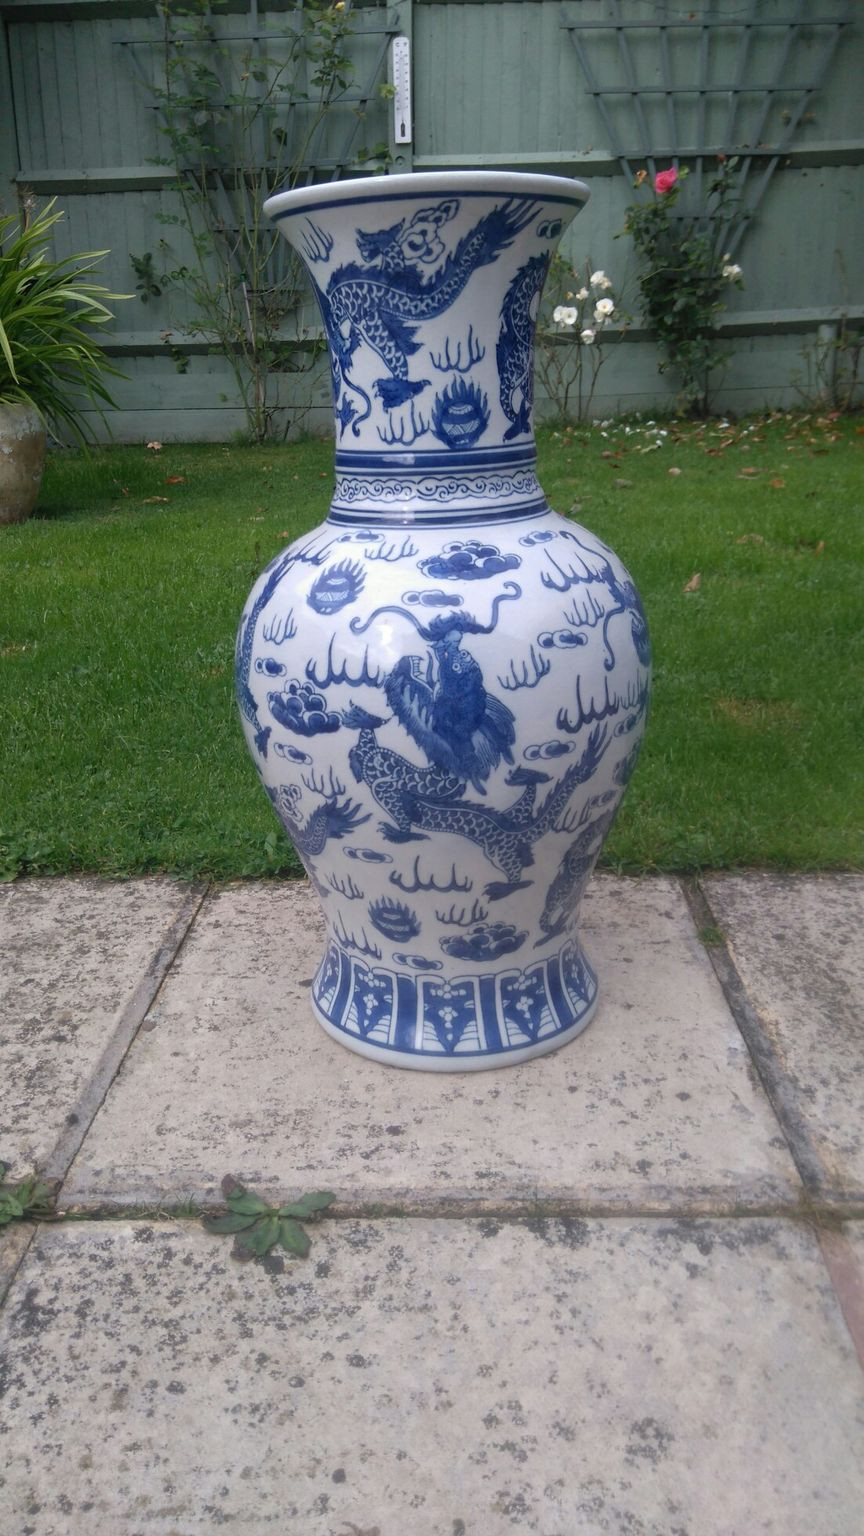 14 Stylish Royal Vienna Vase 2024 free download royal vienna vase of https en shpock com i wco77ontvs3grc x 2018 04 16t182817 for large china vase 22551138